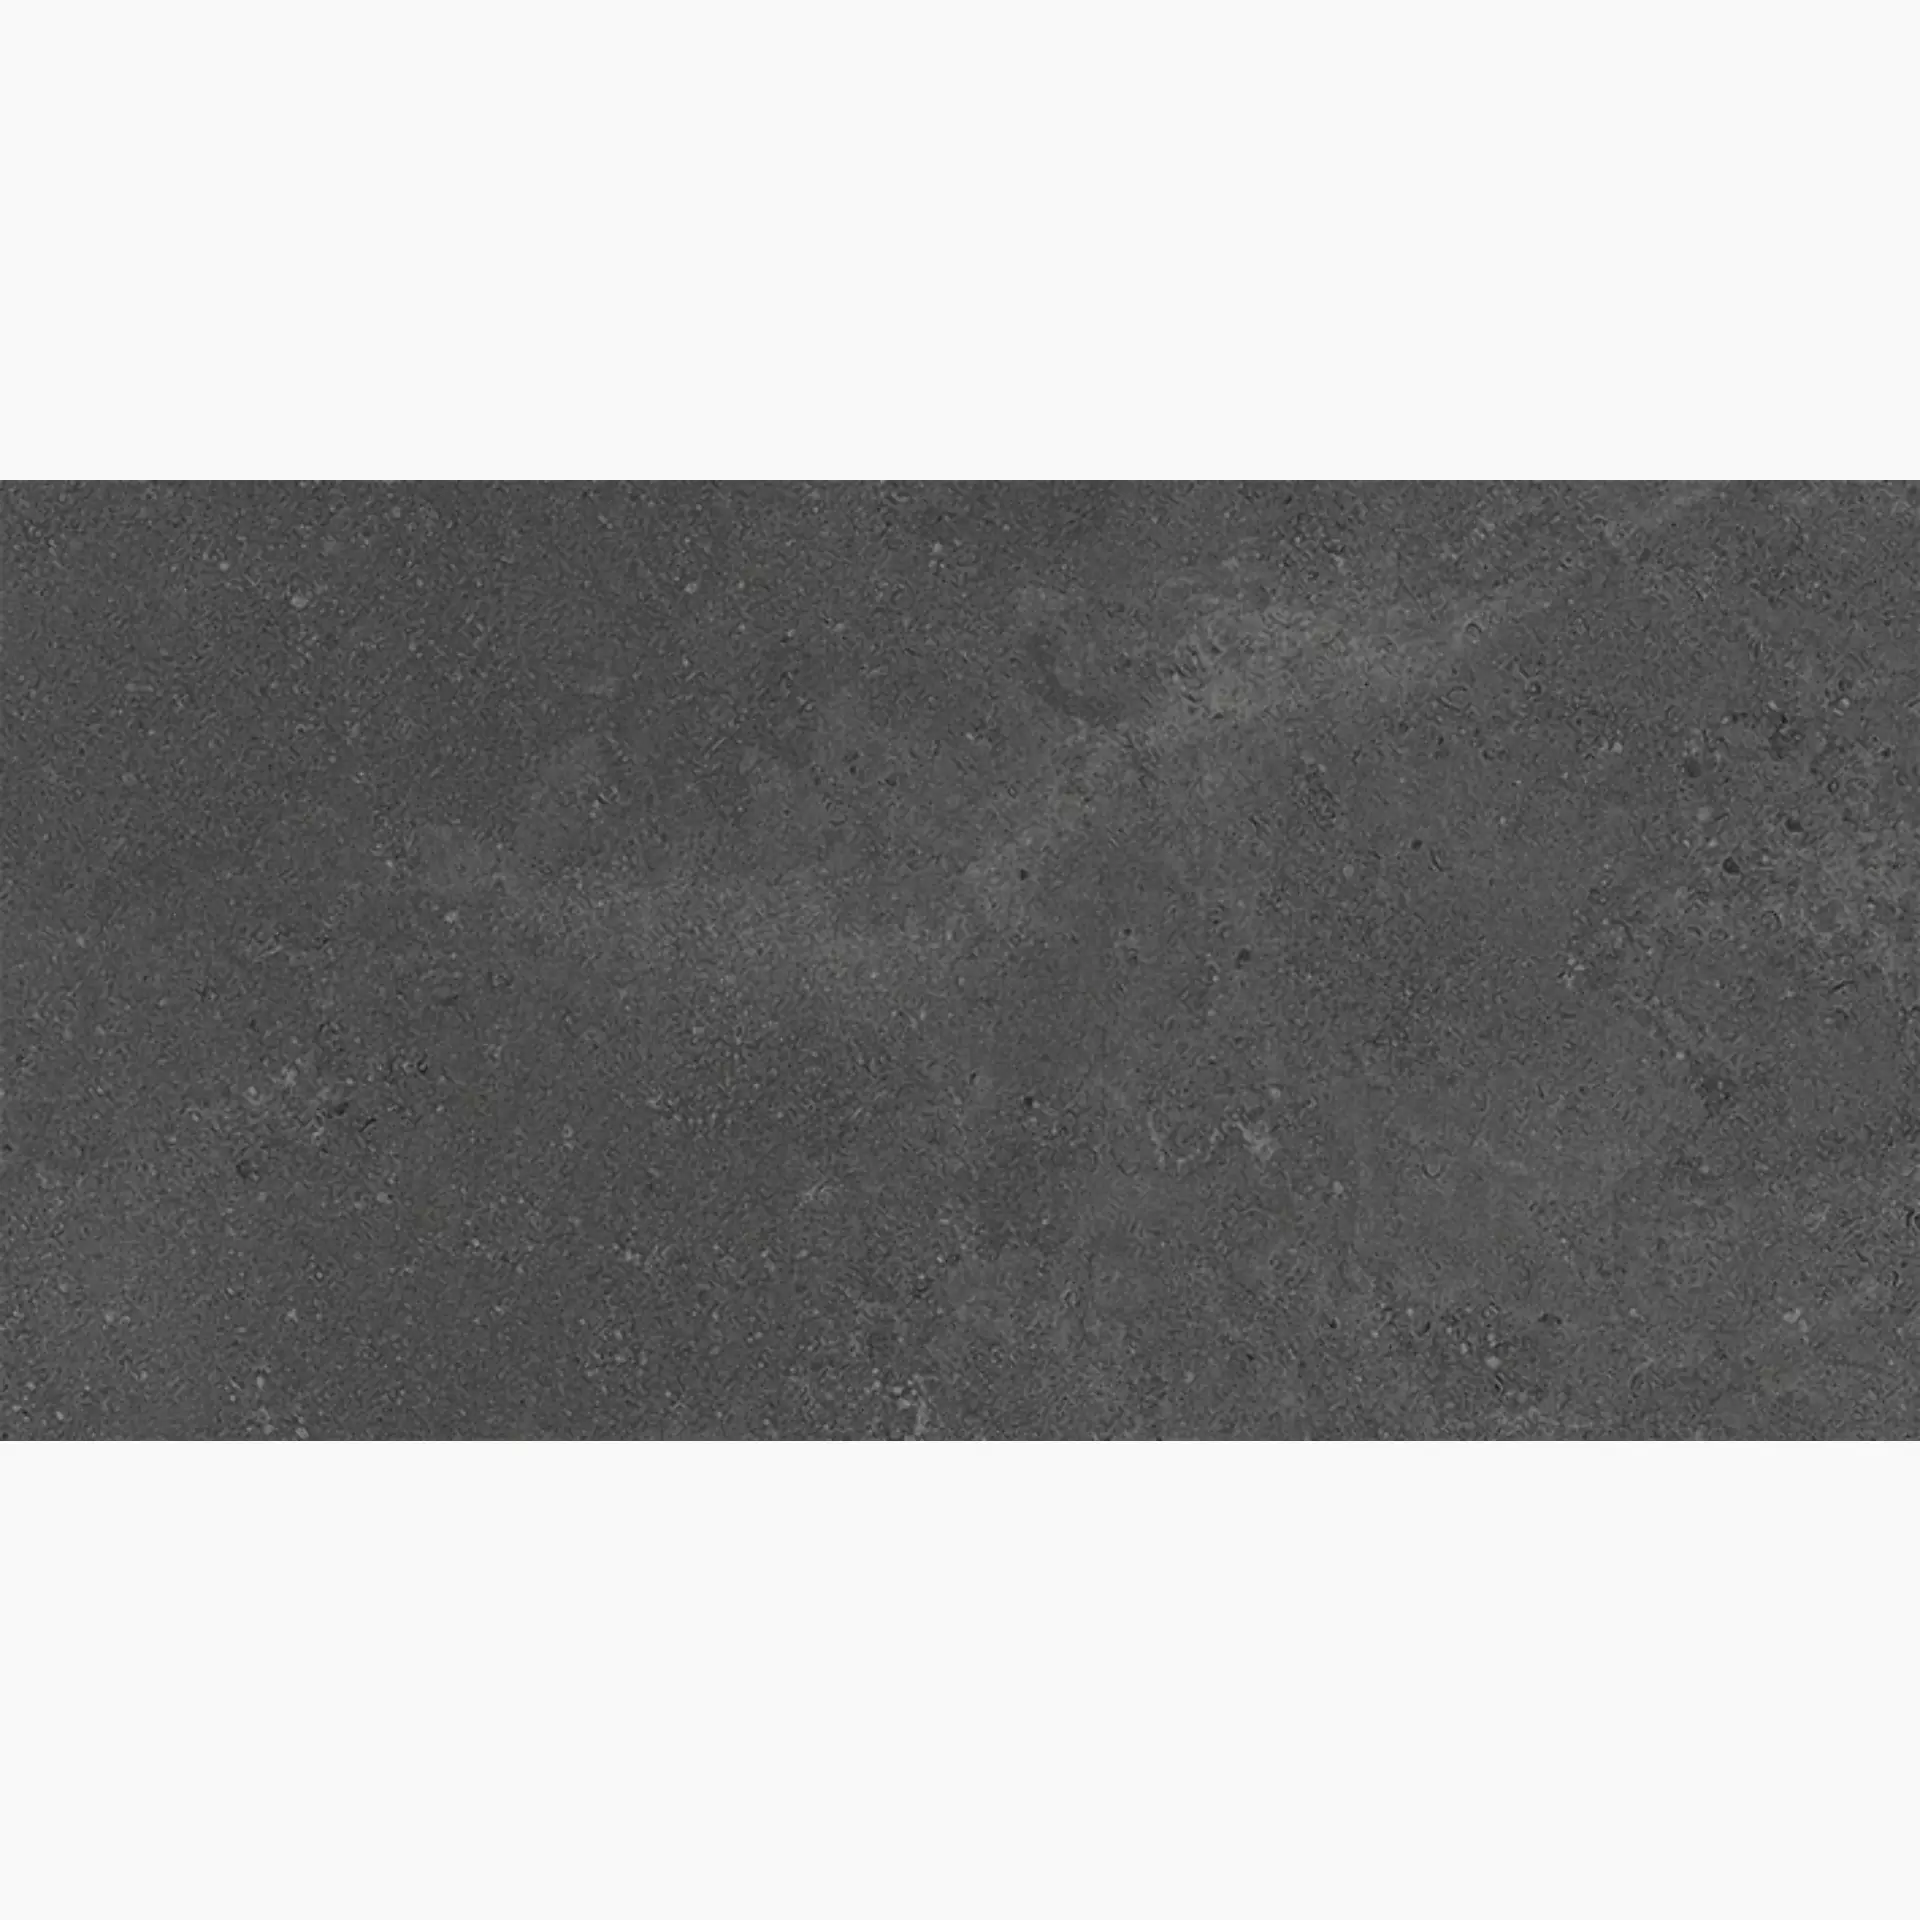 Wandfliese,Bodenfliese Villeroy & Boch Hudson Magma Rough – Polished Magma 2576-SD8L geschliffen 30x60cm rektifiziert 10mm